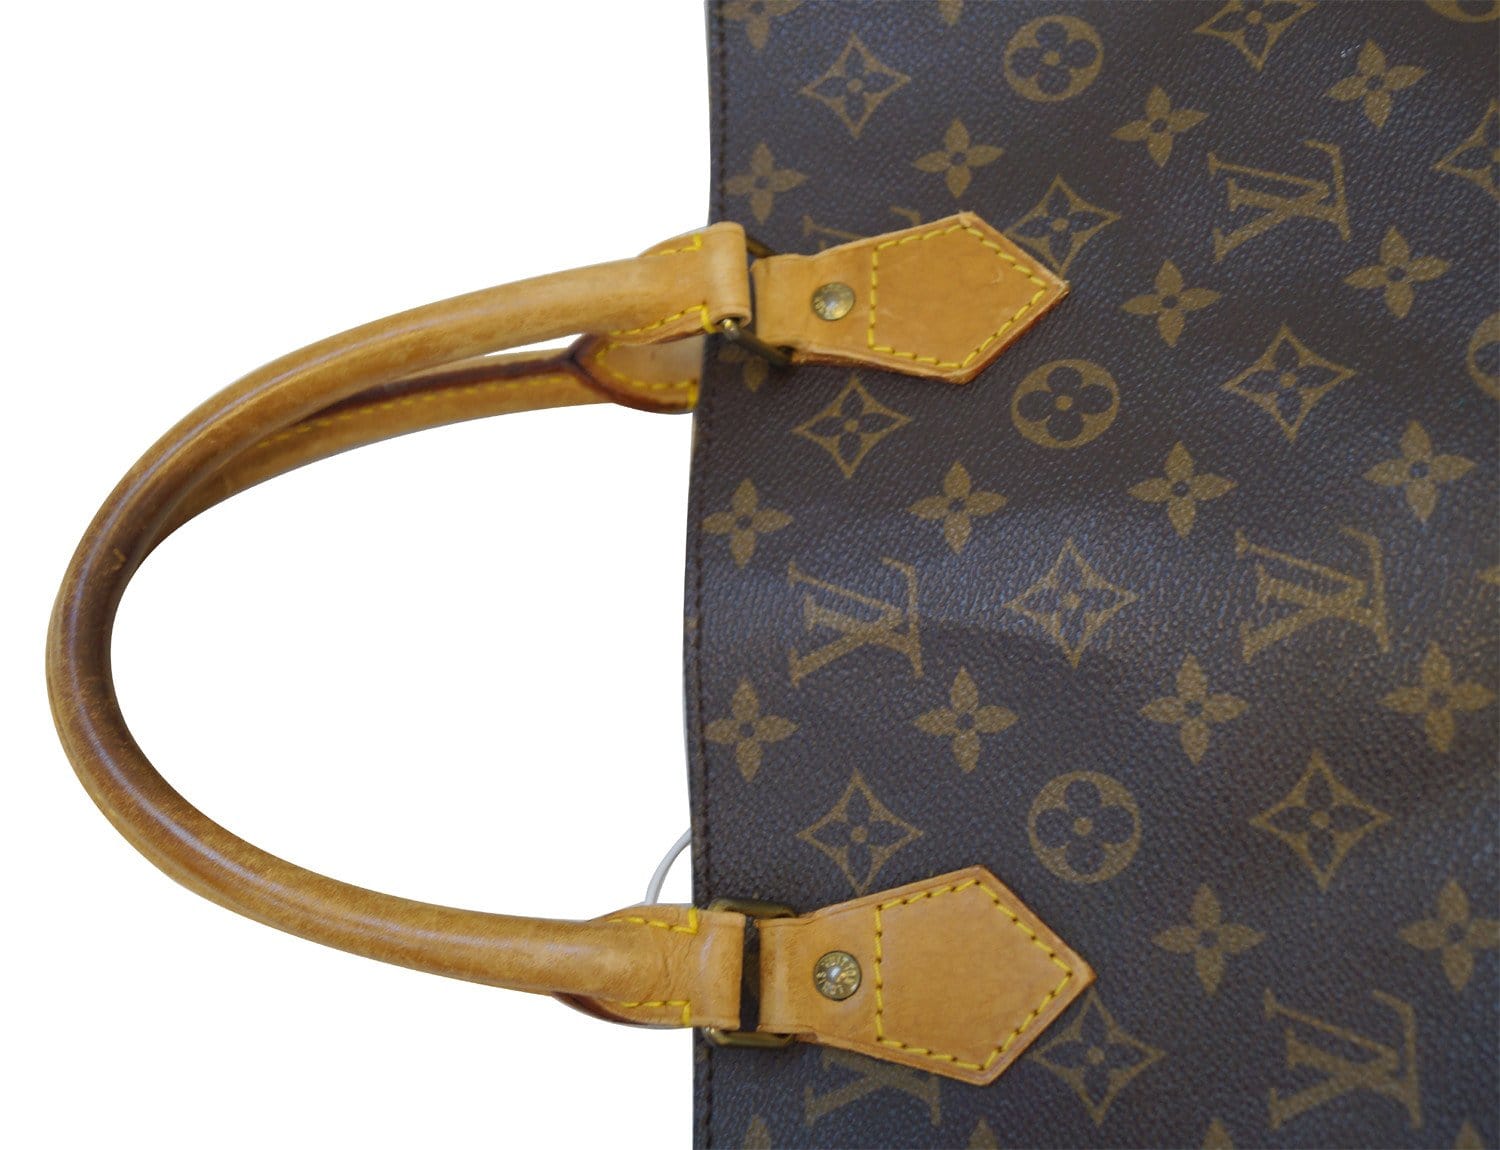 Louis Vuitton Sac Plat Handbag Tote Bag Monogram – Timeless